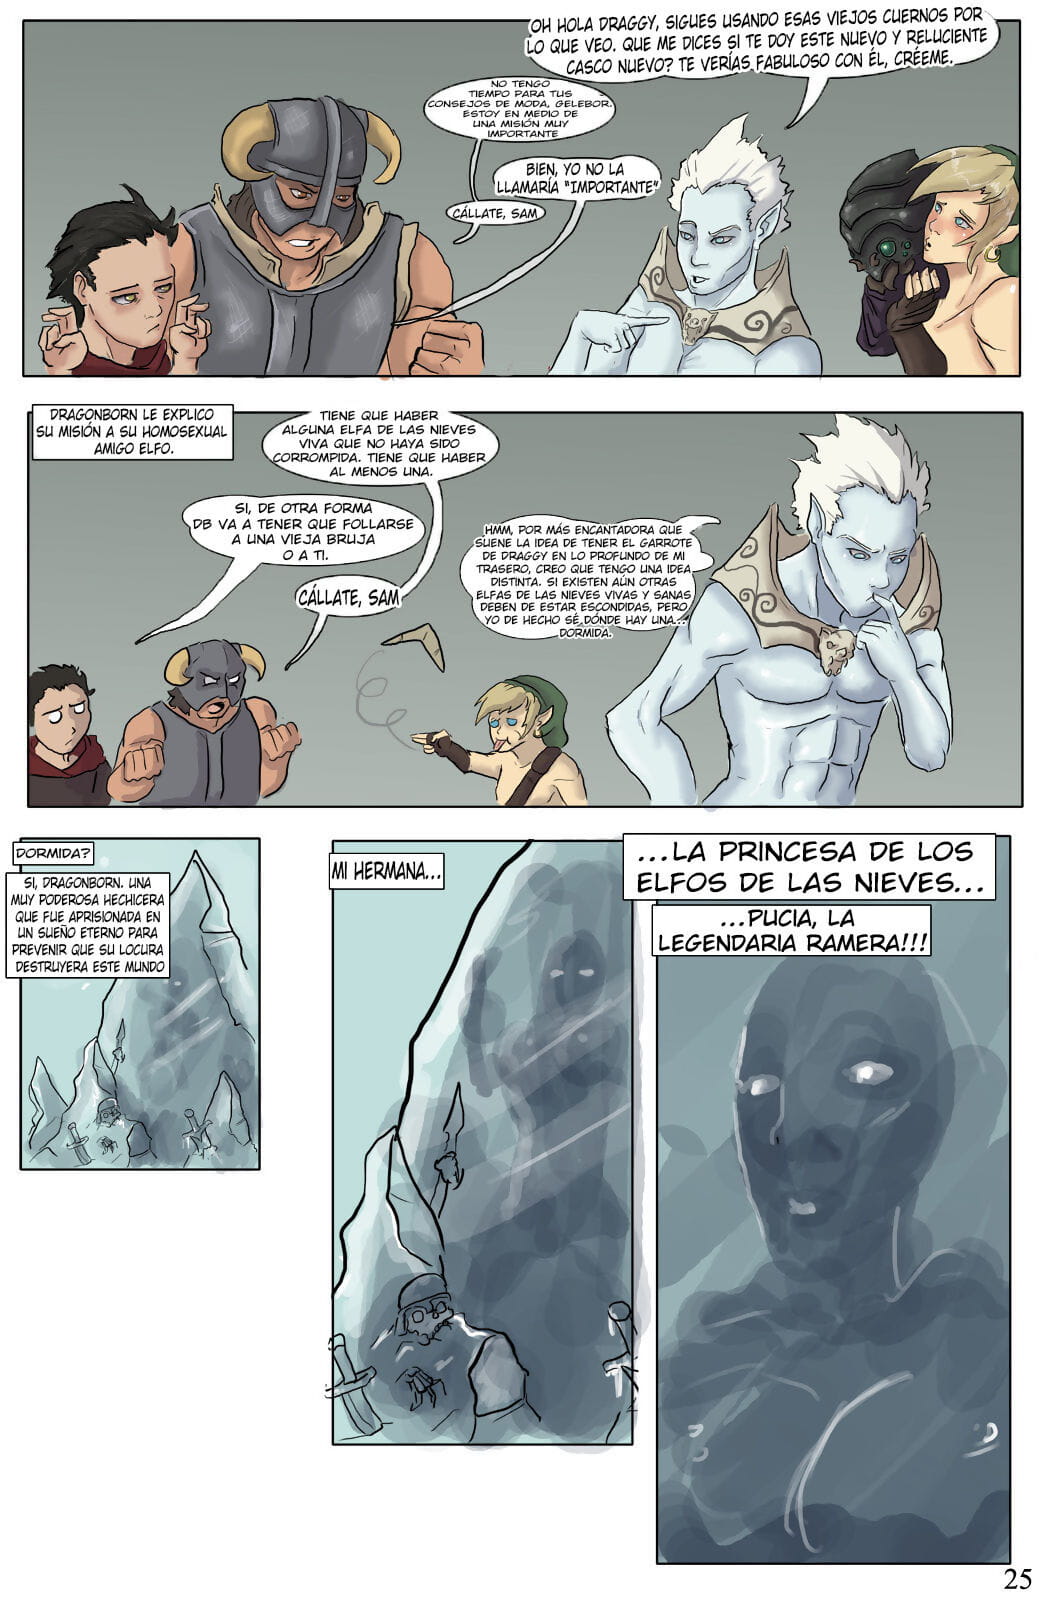 El Devenir de Dragonborn - part 3 page 1